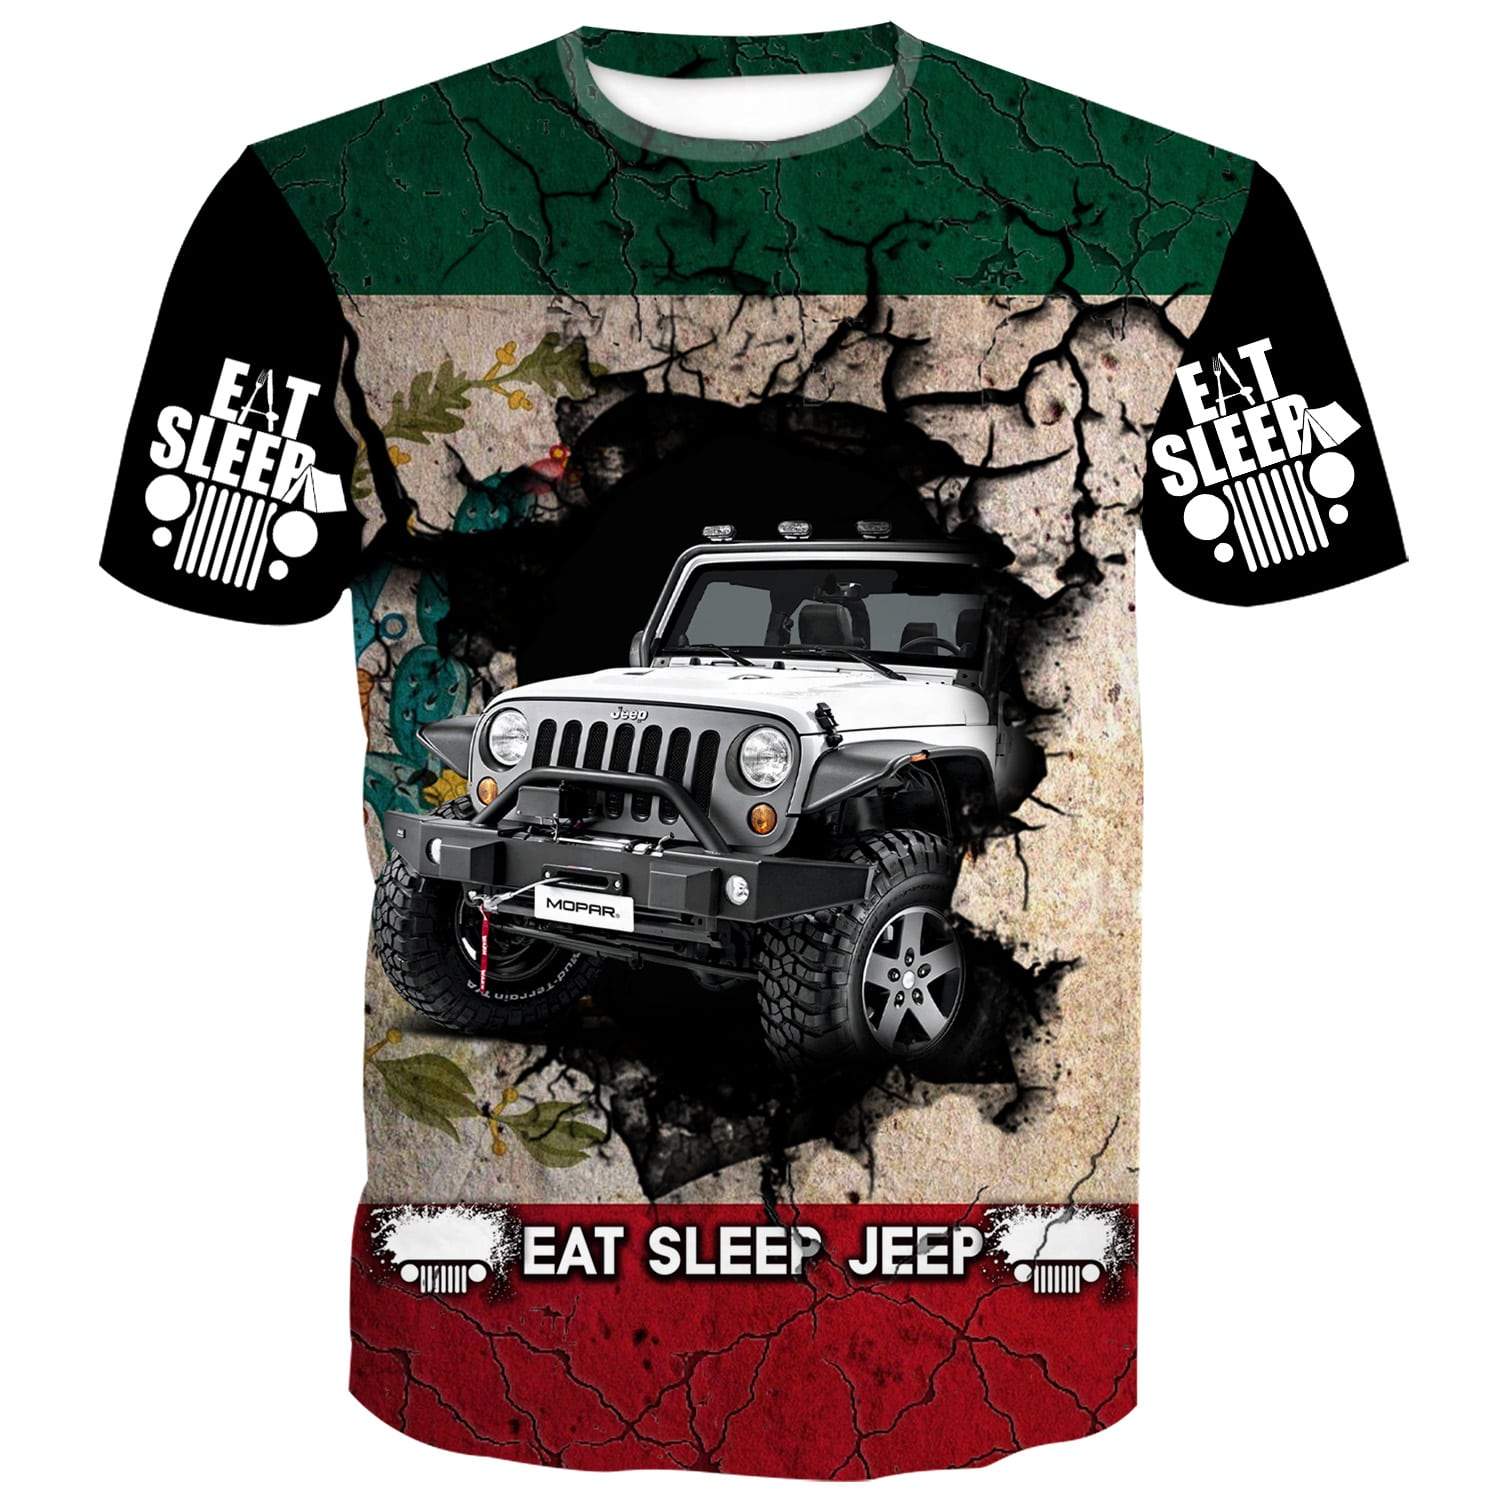 Boxtroll Fish Shirt Personalized Kids Jeep Shirt by HeadlessShirts